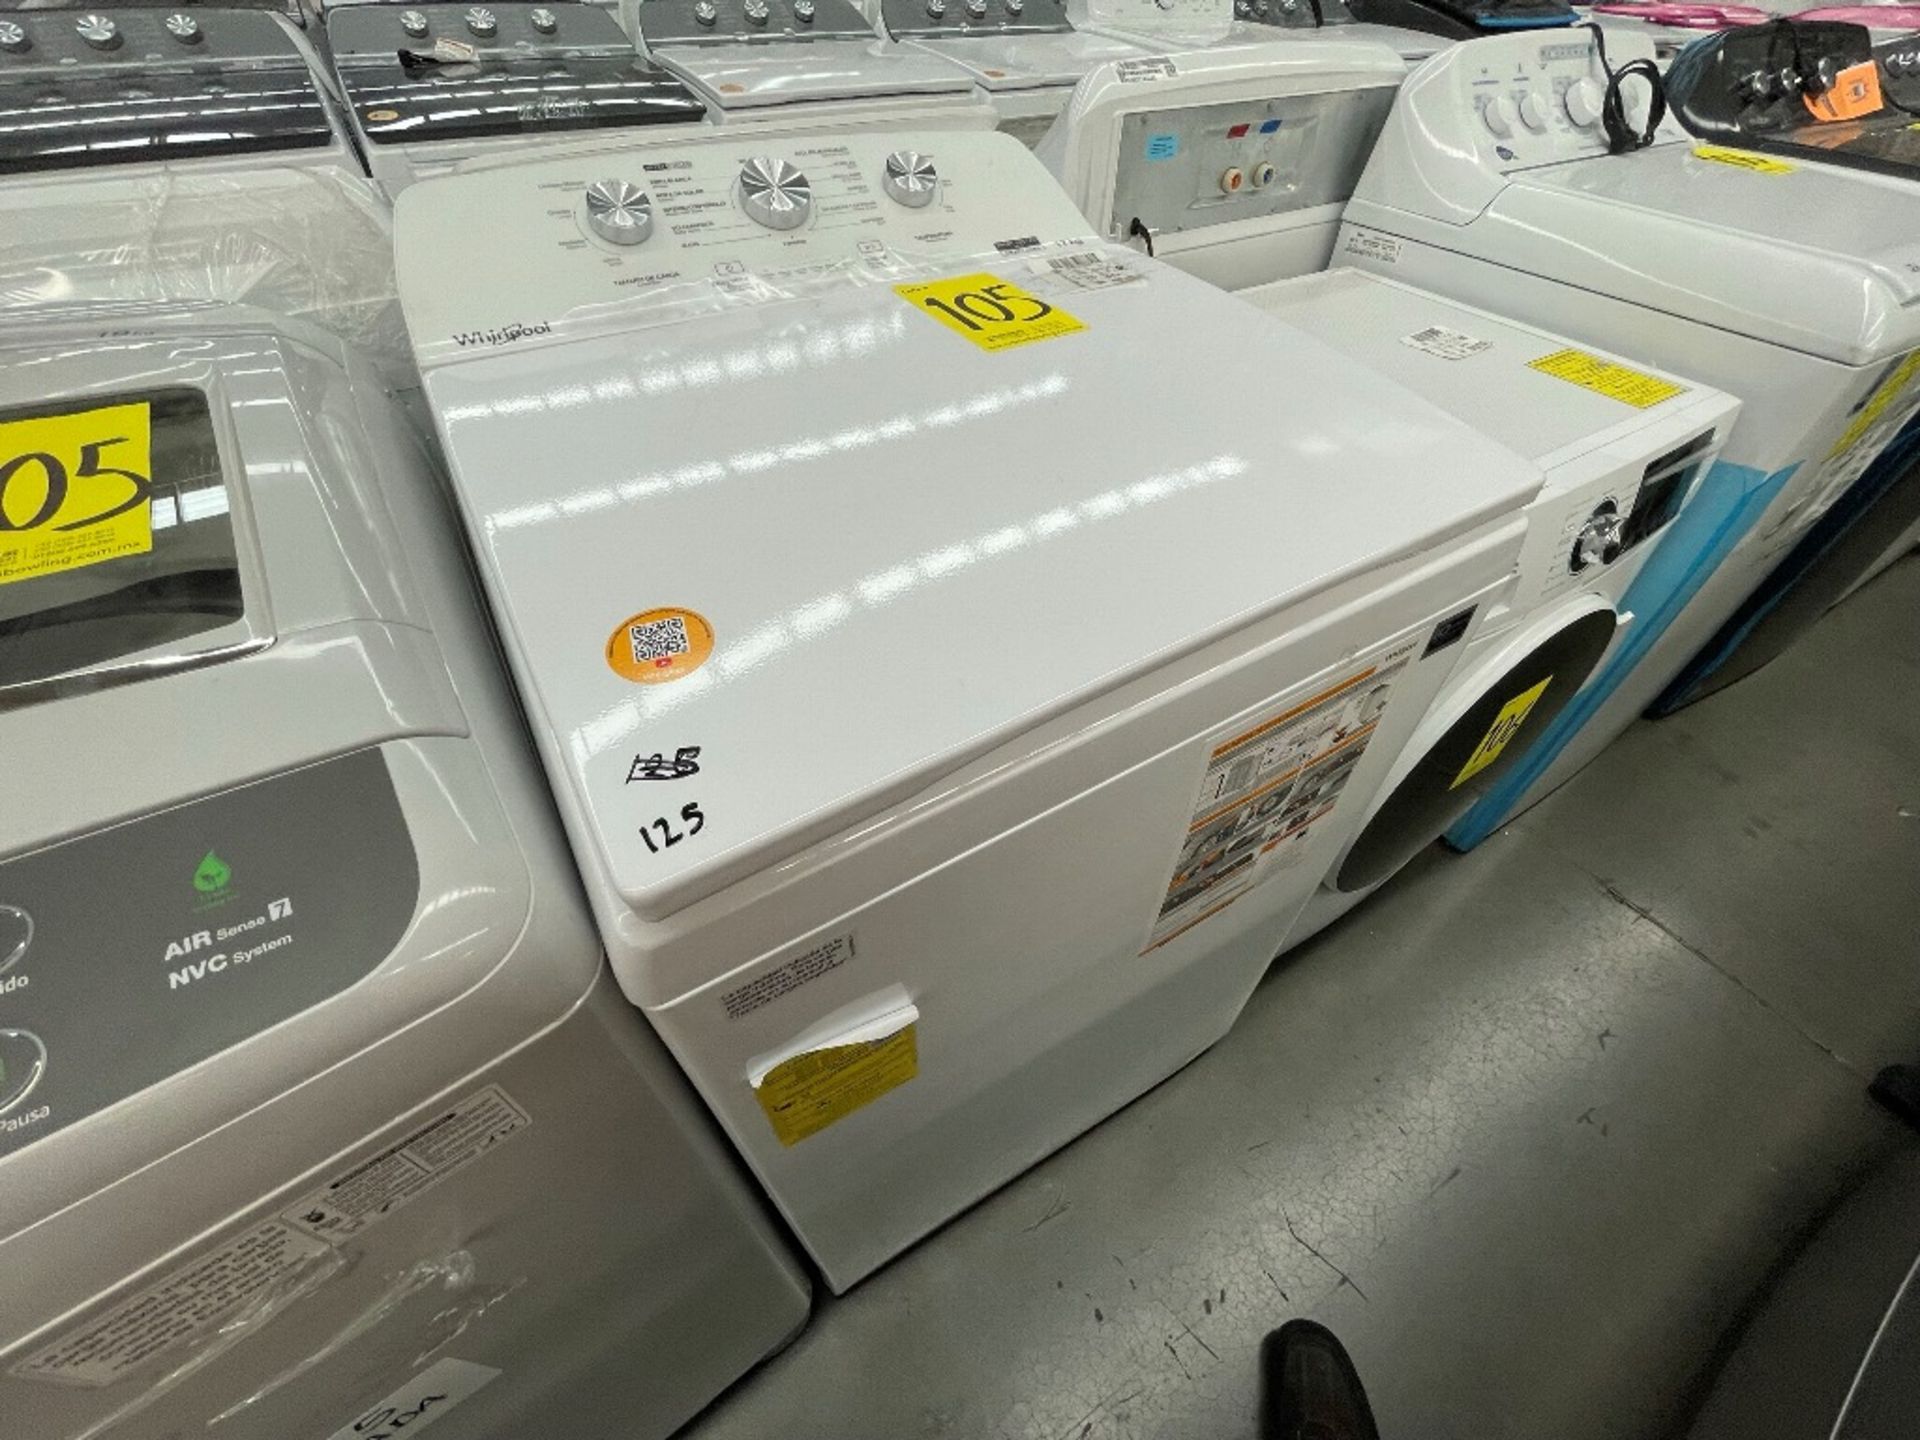 Lote de 2 Lavadoras contiene: 1 lavadora de 19 KG, Marca WINIA, Modelo WHF19F3YY2AH, Serie 801284, - Image 4 of 10